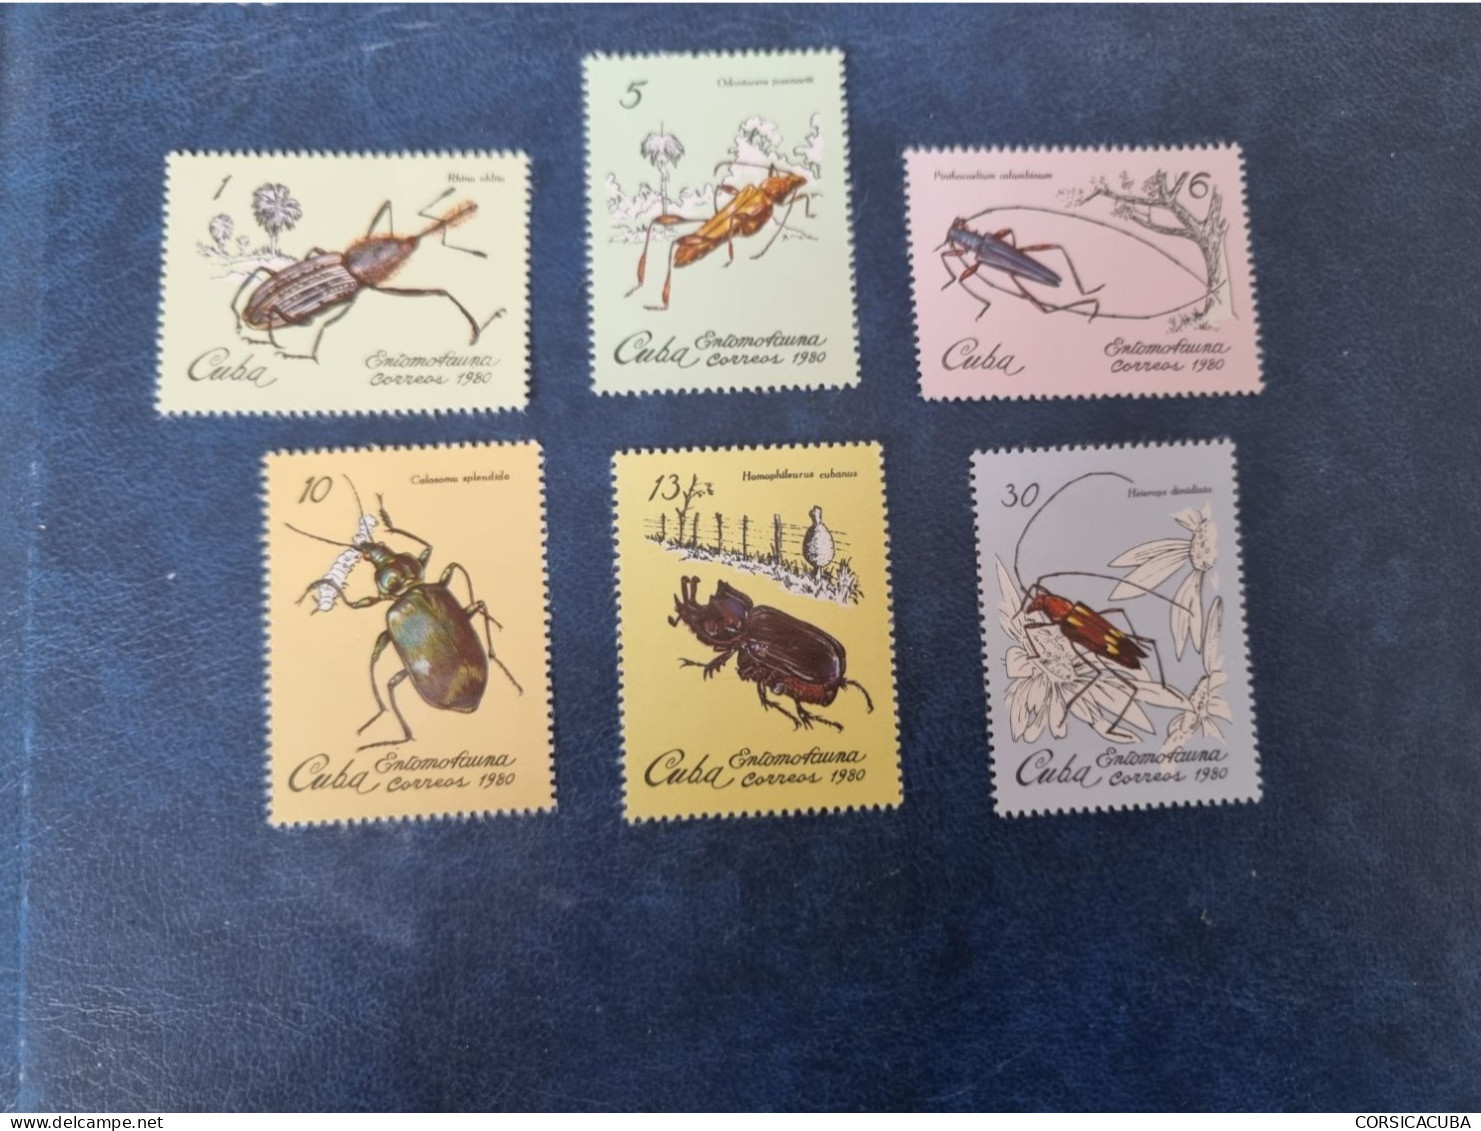 CUBA  NEUF   1980   ENTOMOFAUNA   //  PARFAIT  ETAT  //  1er  CHOIX  // Sans Gomme - Unused Stamps